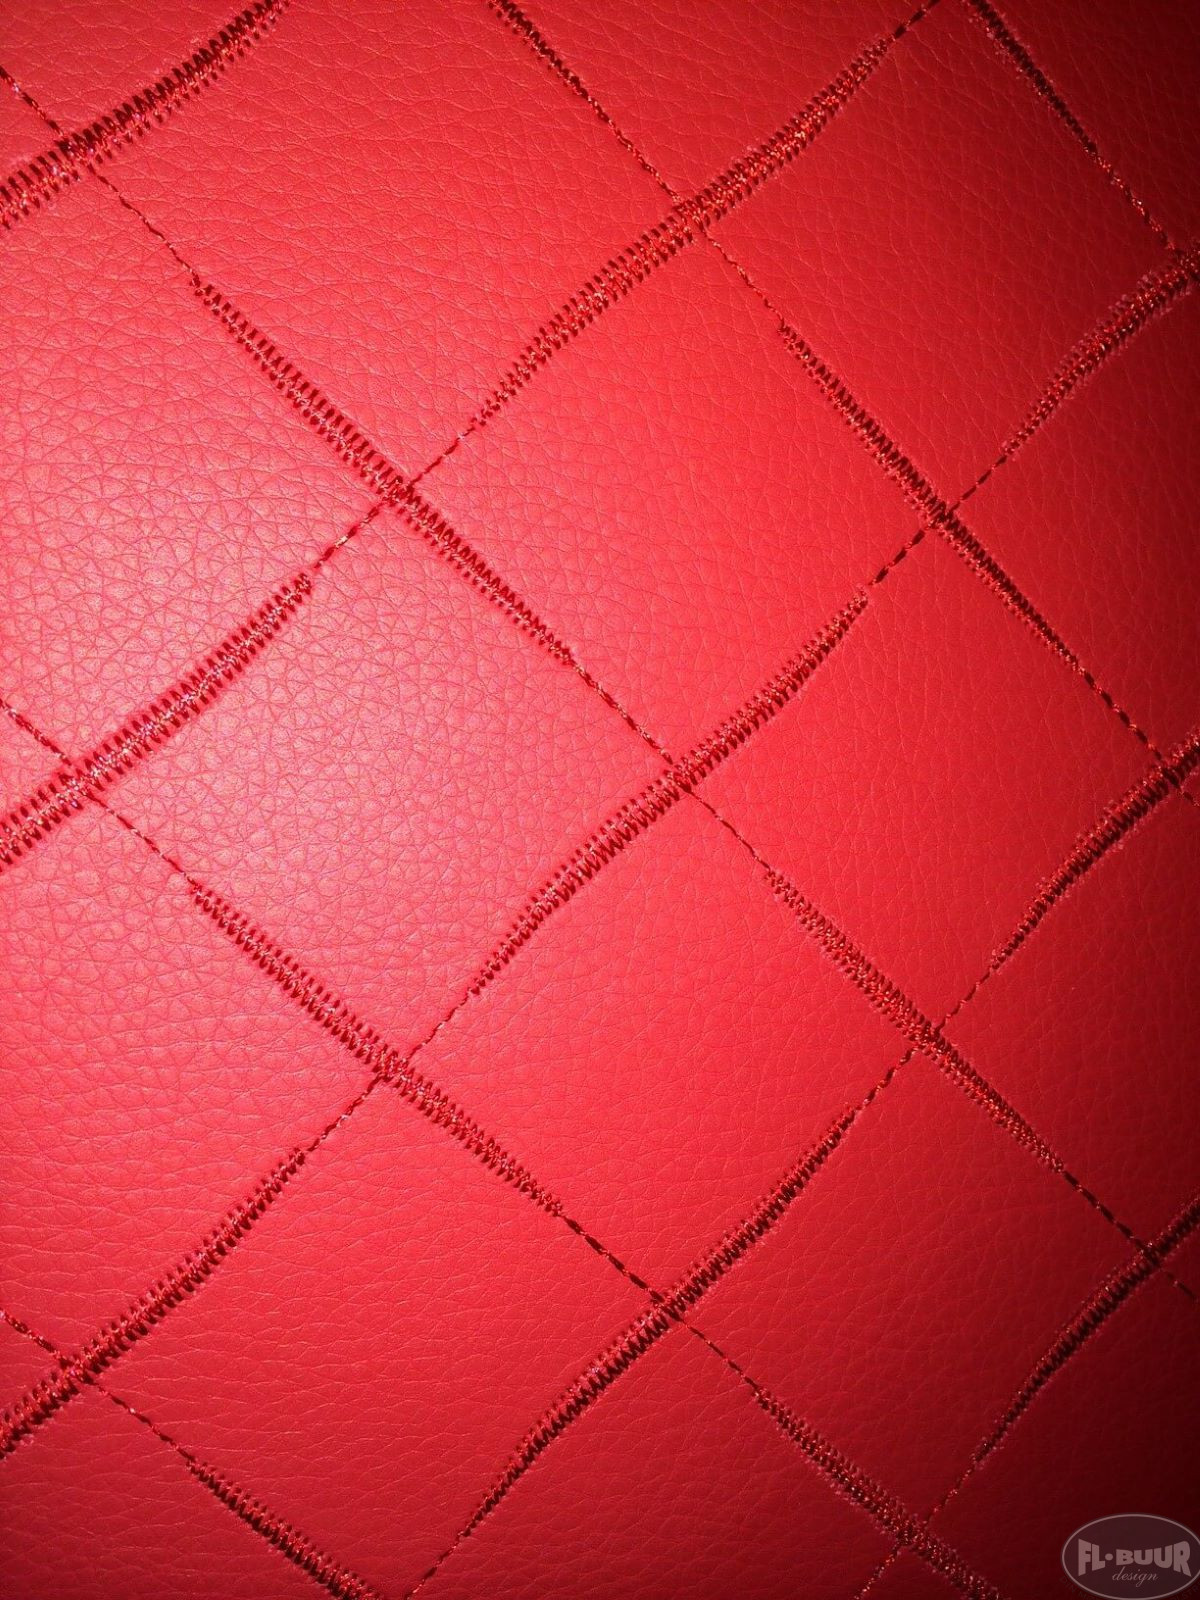 3045 Rød læderlook med mønster